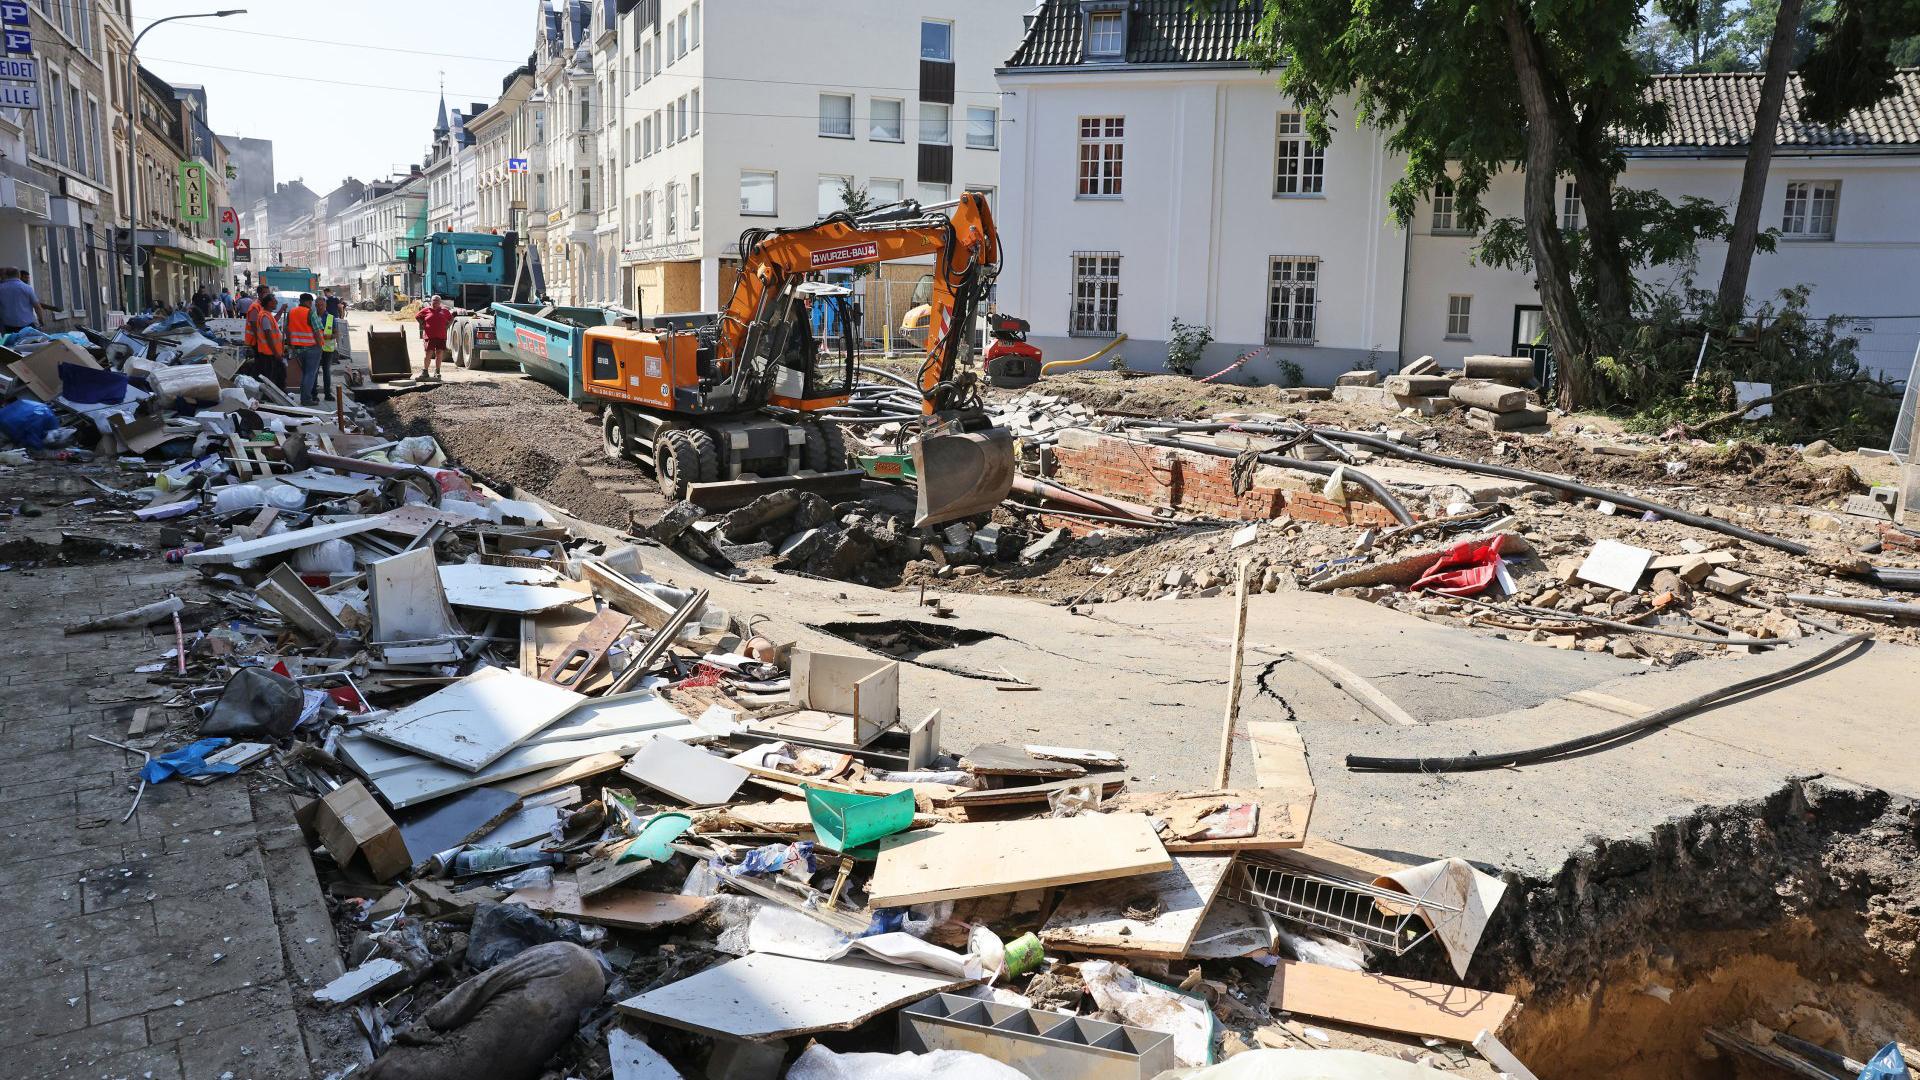 Bilder zerstörter Heimat tragen die Menschen auch in sich. (c) Bistum Aachen/Andreas Steindl